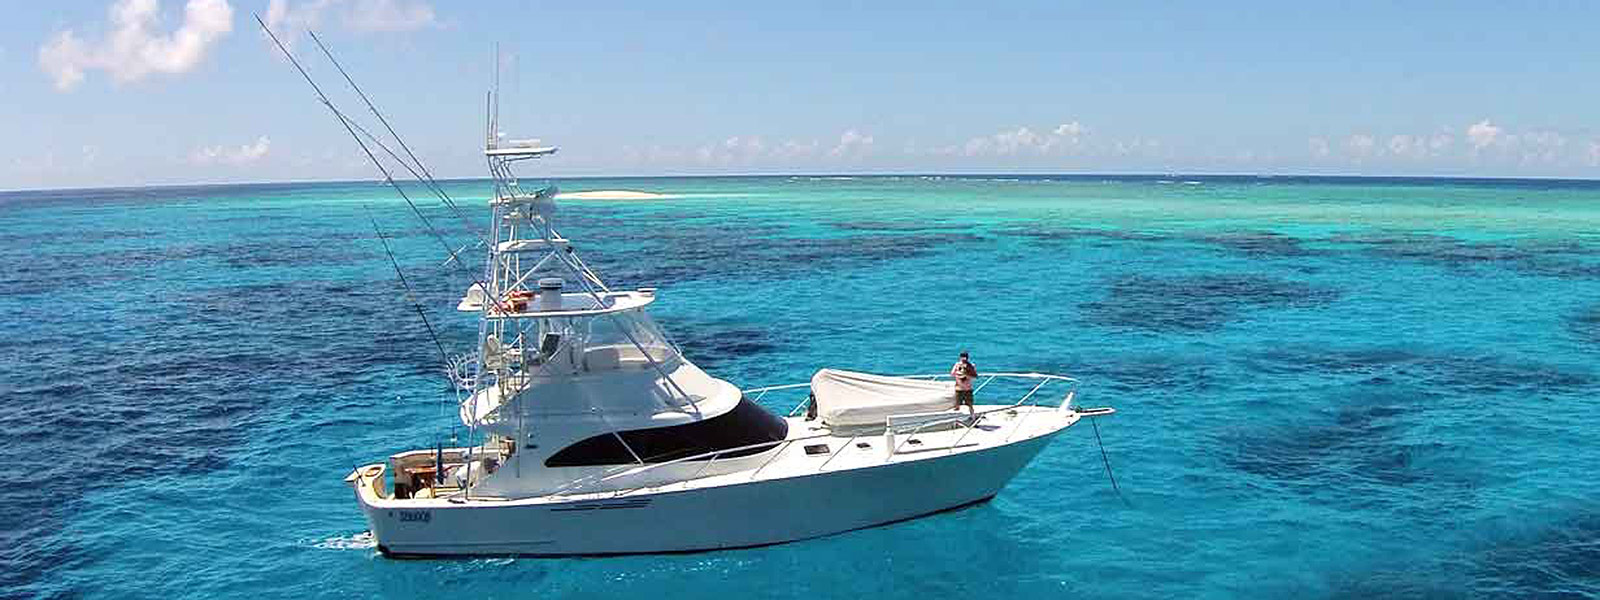 Luxury Private Boat Charter Port Douglas